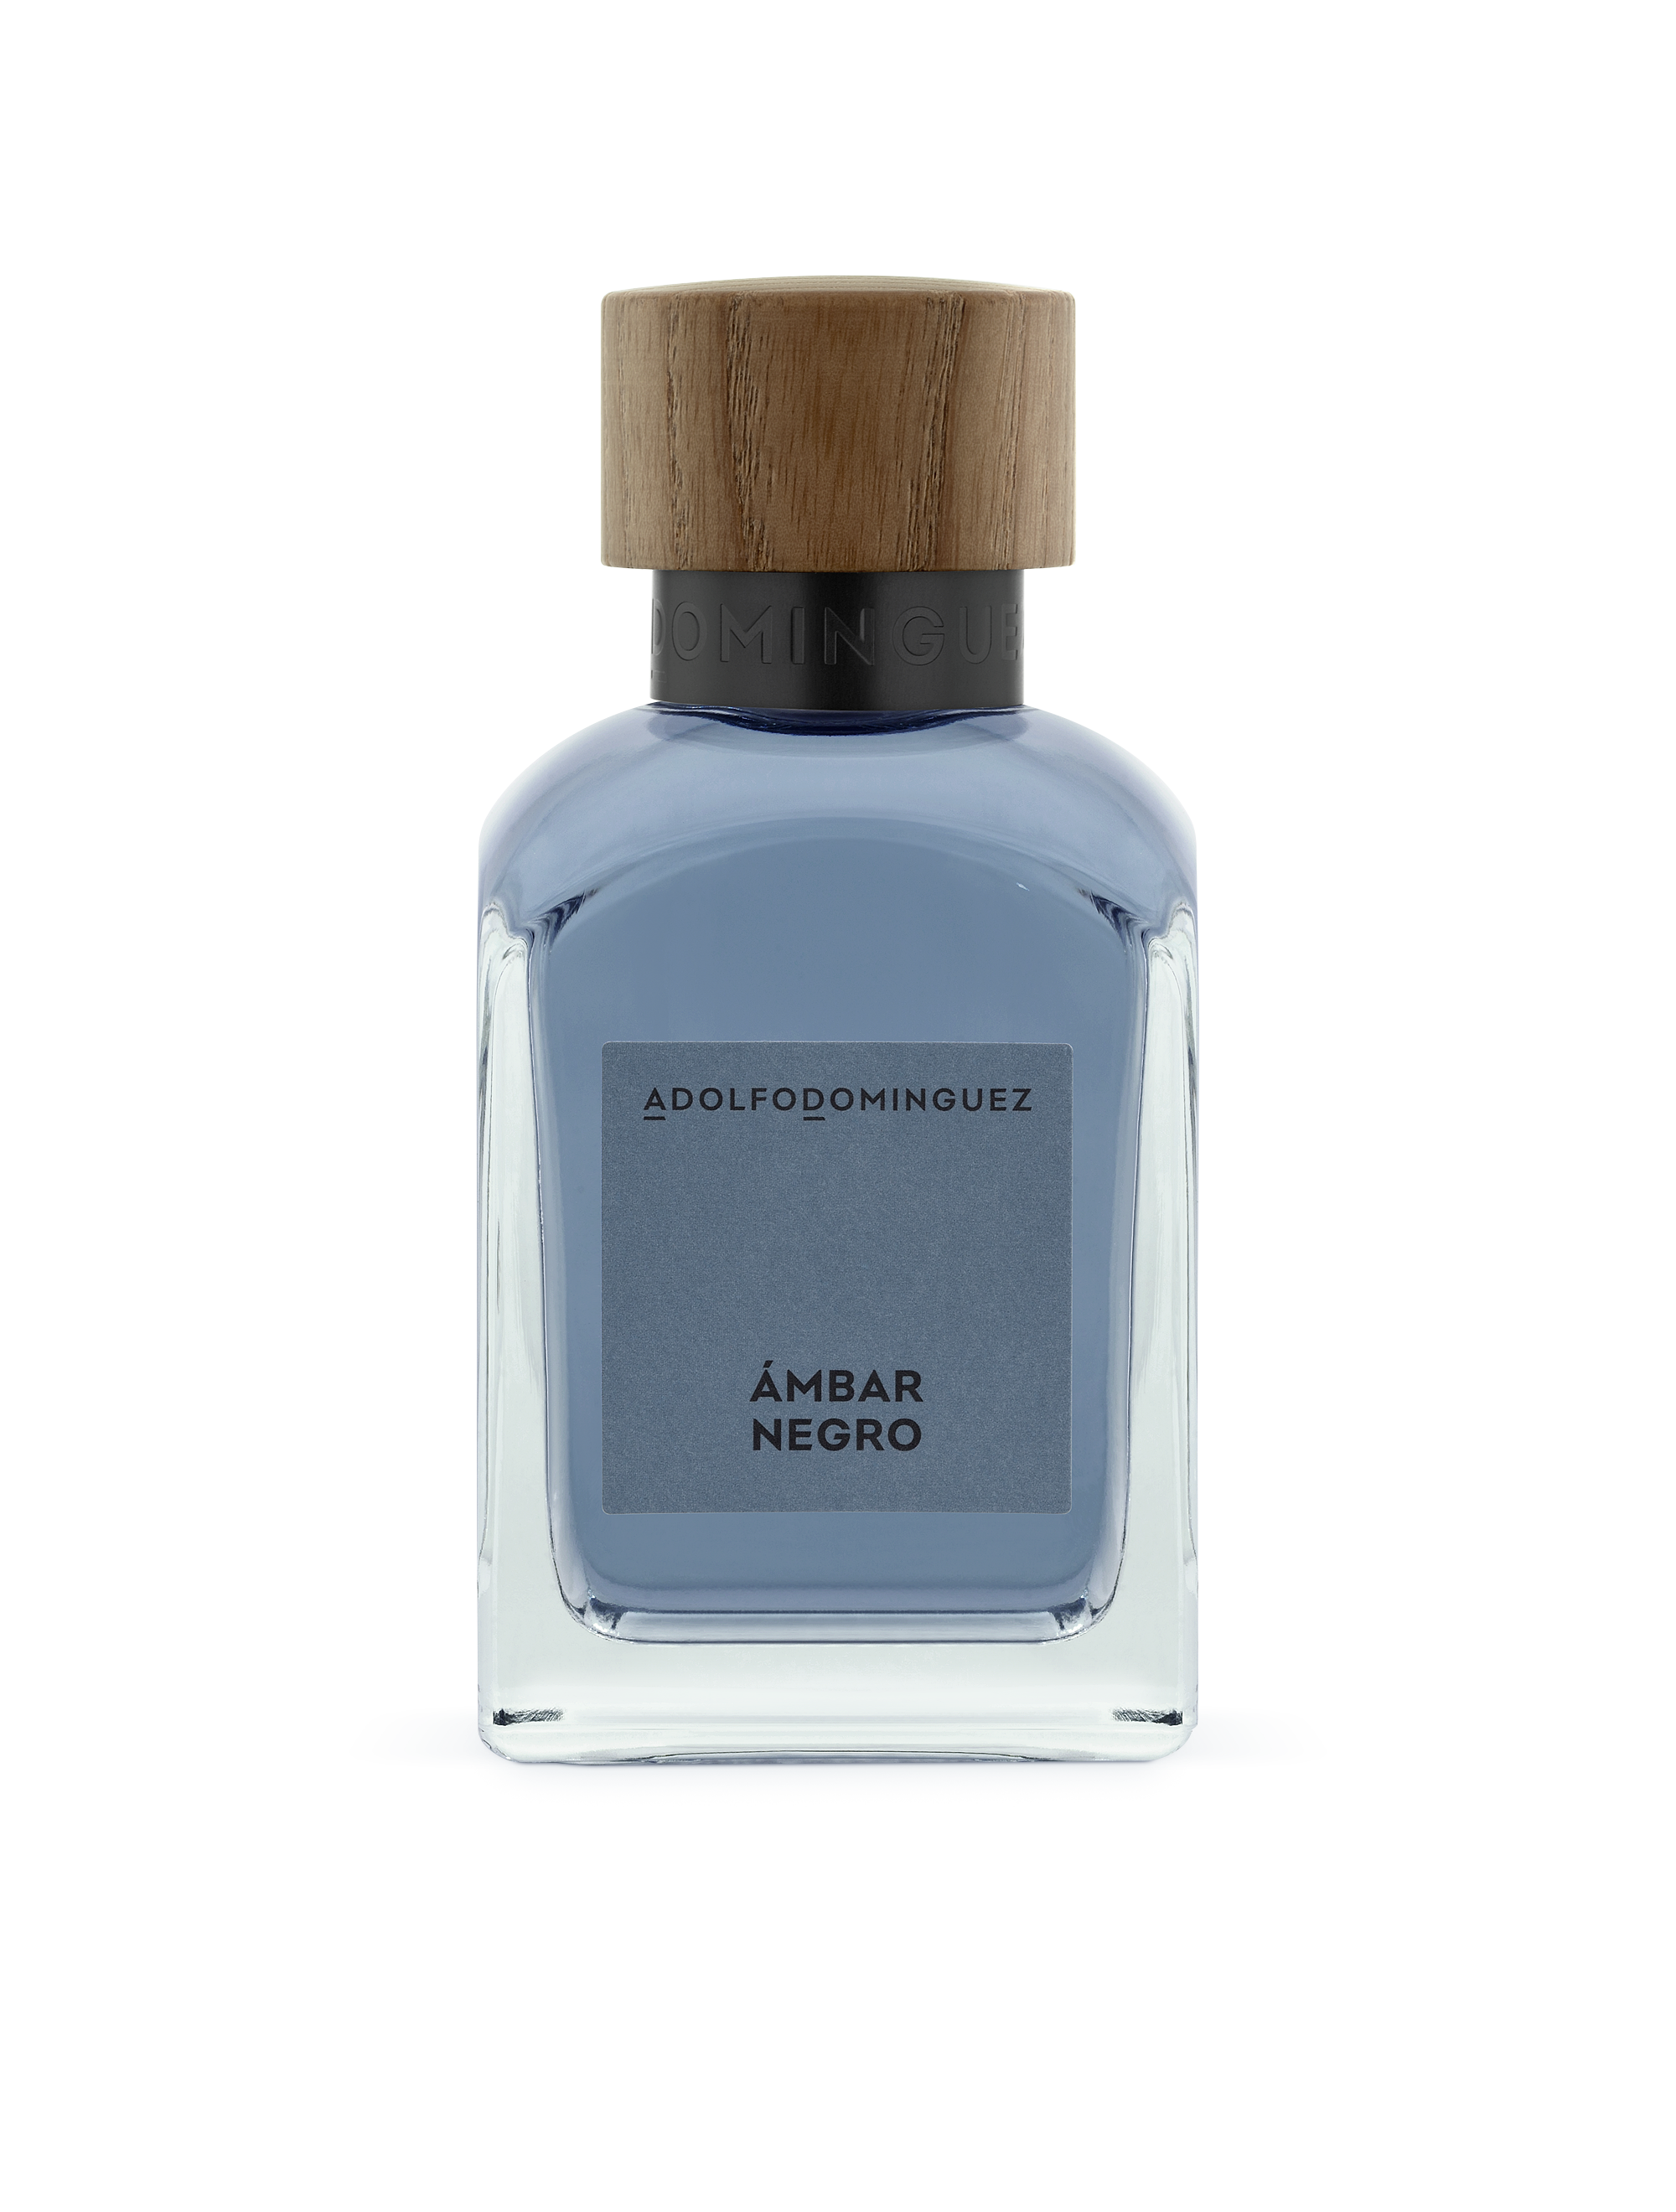 Victorio & Lucchino Aguas Esenciales Evasion Azul Eau de Cologne -  Perfumerías Ana